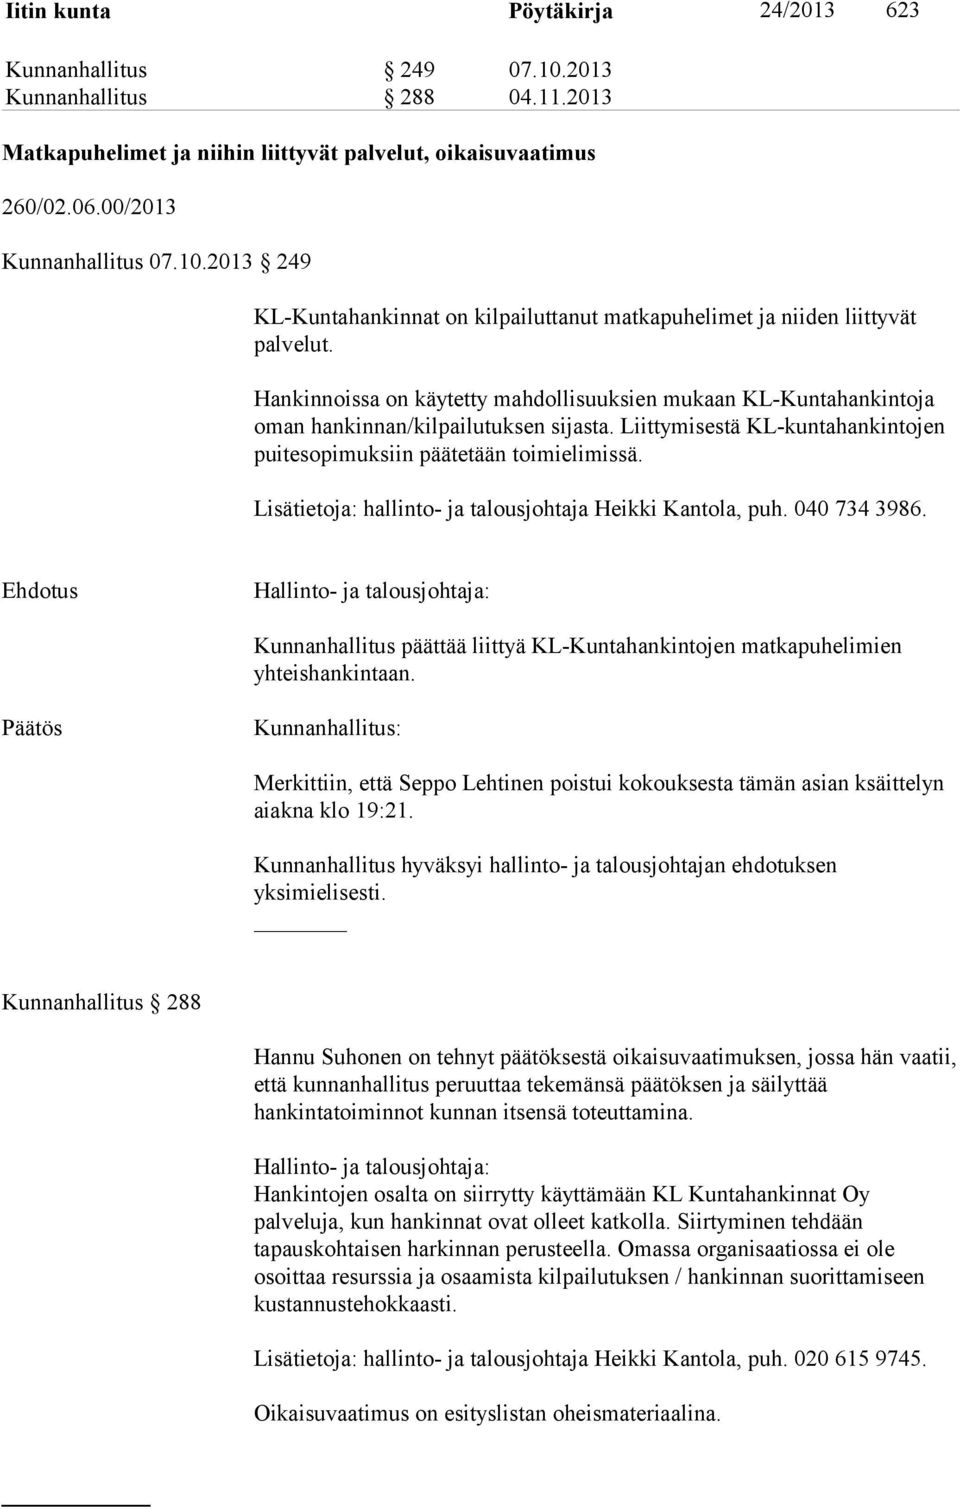 Lisätietoja: hallinto- ja talousjohtaja Heikki Kantola, puh. 040 734 3986. Hallinto- ja talousjohtaja: Kunnanhallitus päättää liittyä KL-Kuntahankintojen matkapuhelimien yhteishankintaan.